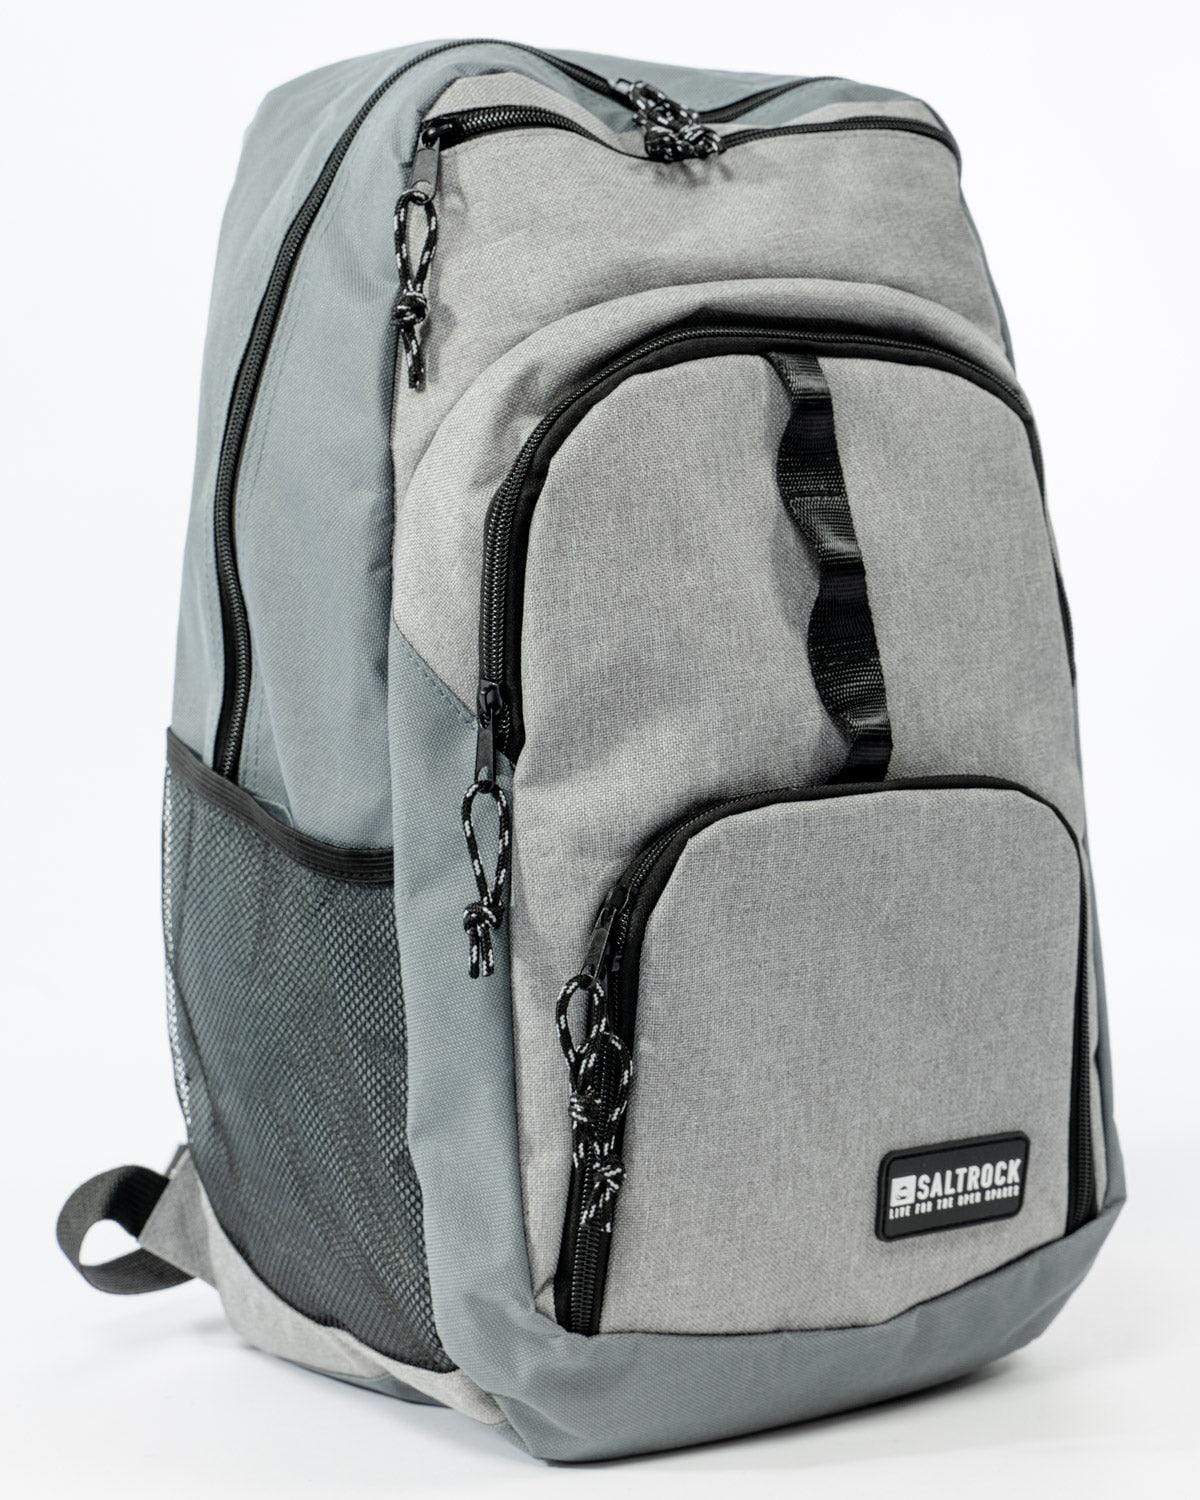 Boardwalk Utility Backpack with Cooler Pocket